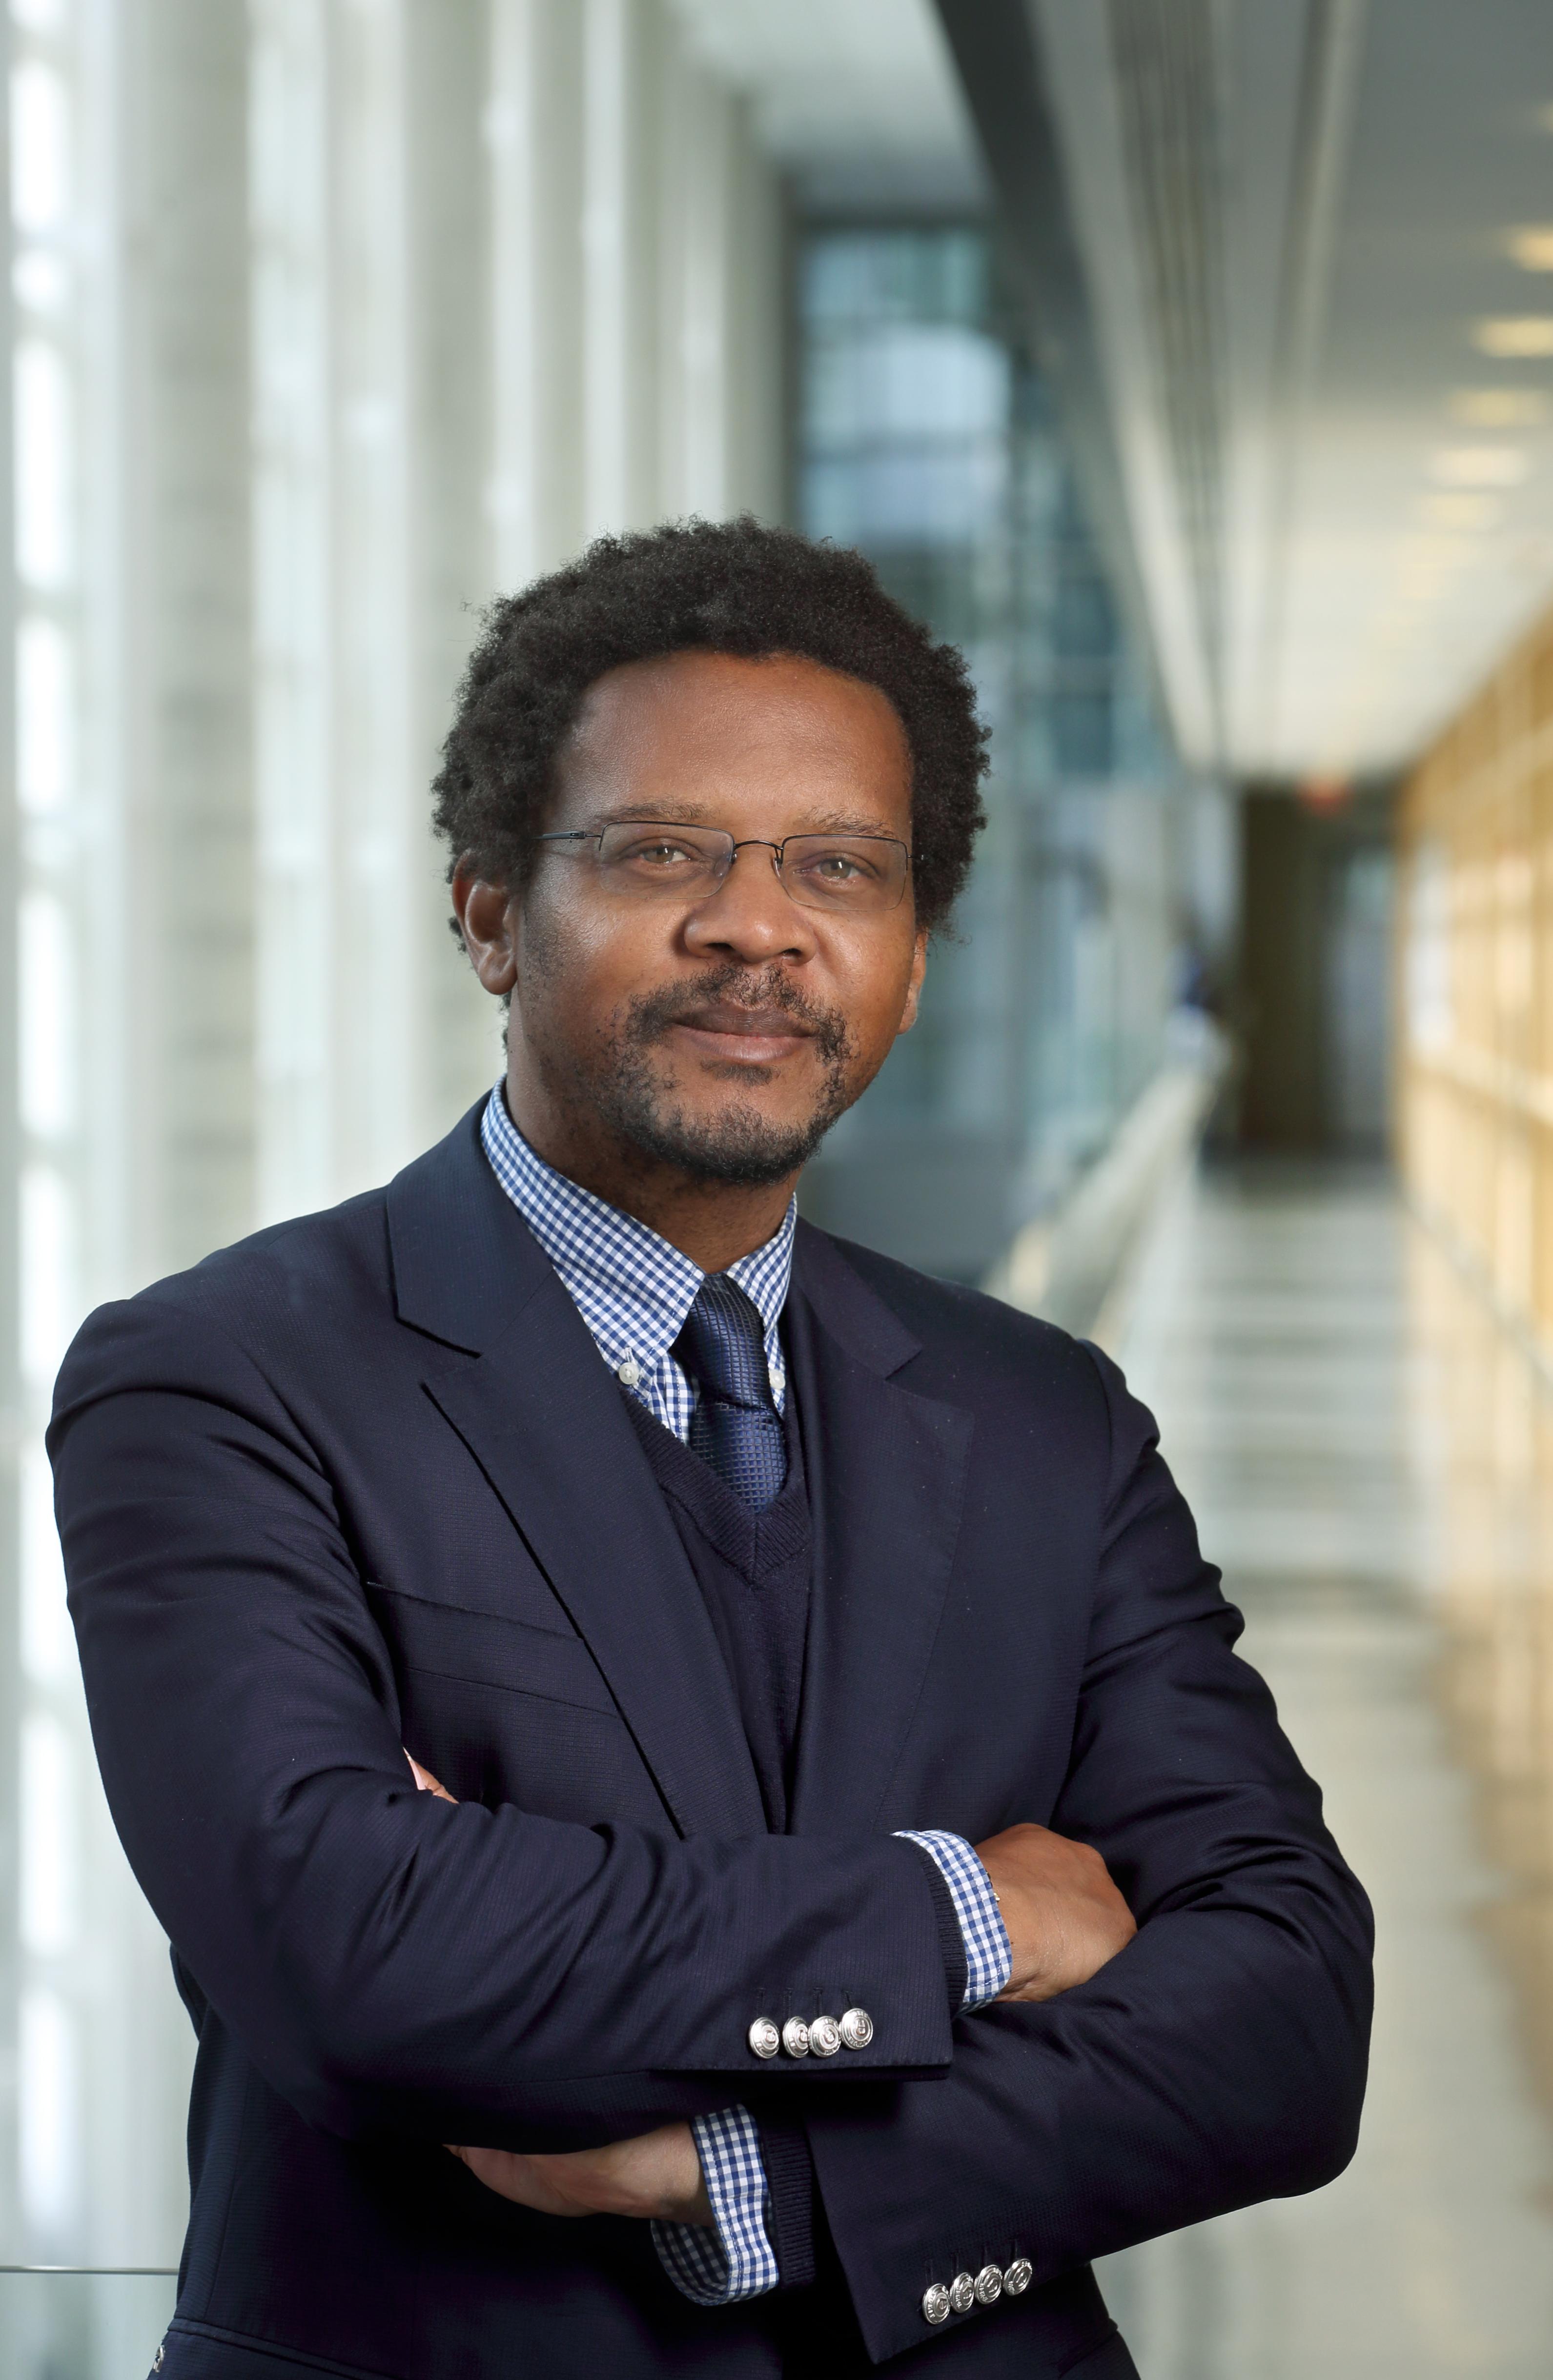 遗传医学部主任Ambroise Wonkam的肖像照. 他是一个非裔美国人，站在研究大楼的走廊上